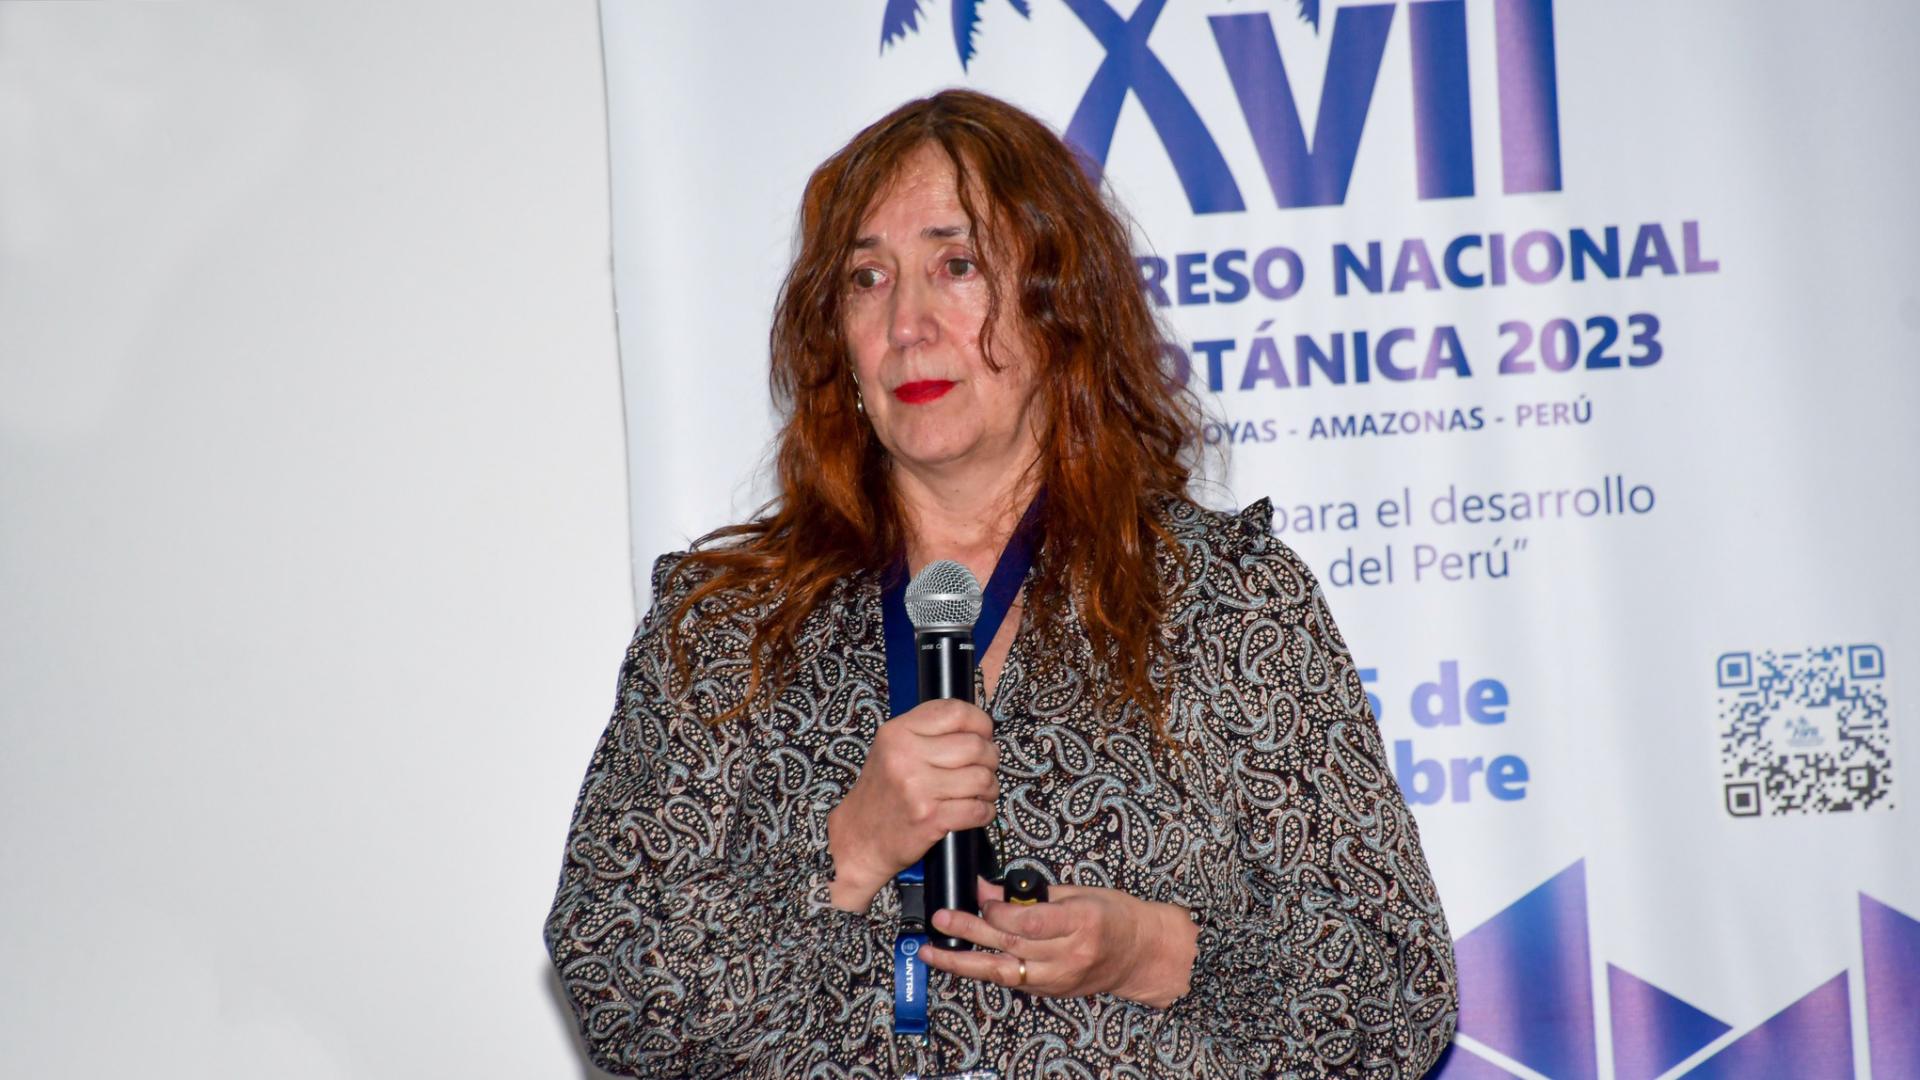 Gloria Rojas en el XVII Congreso Nacional de Botánica 2023, Chachapoyas, Amazonas, Perú.